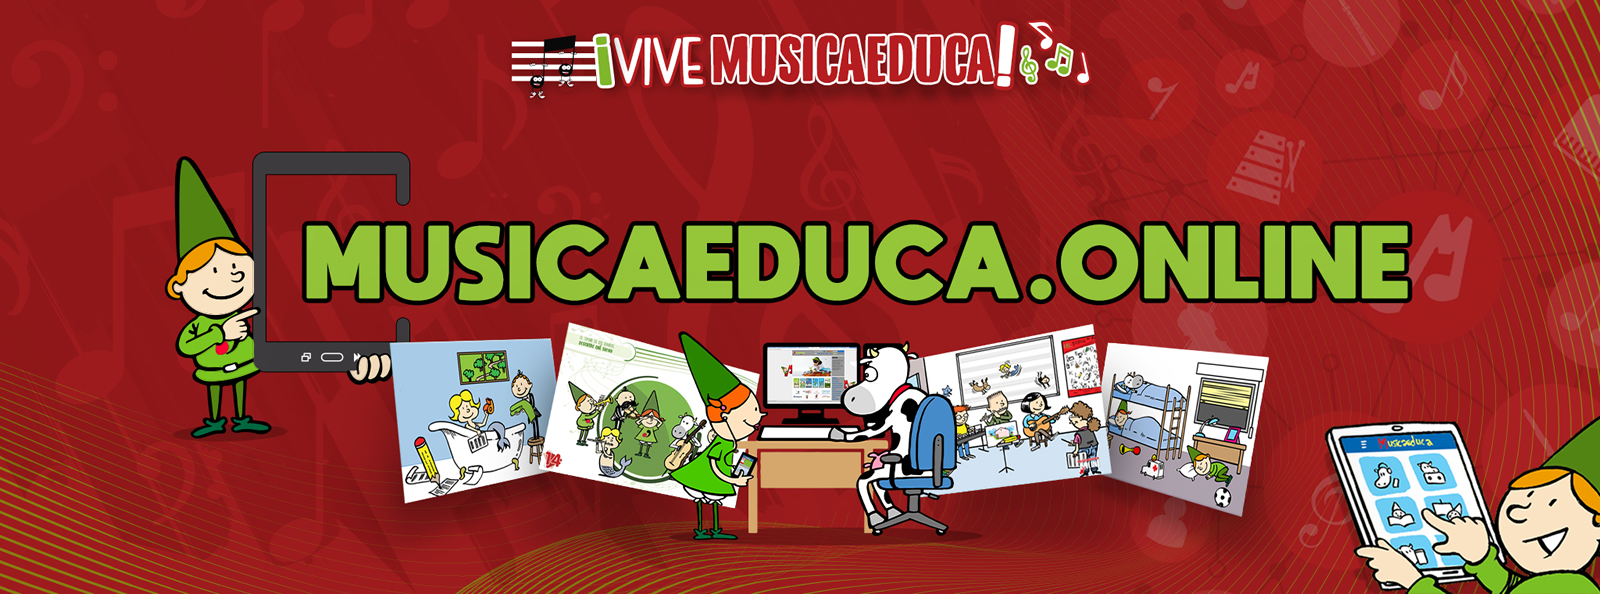 musicaeduca online